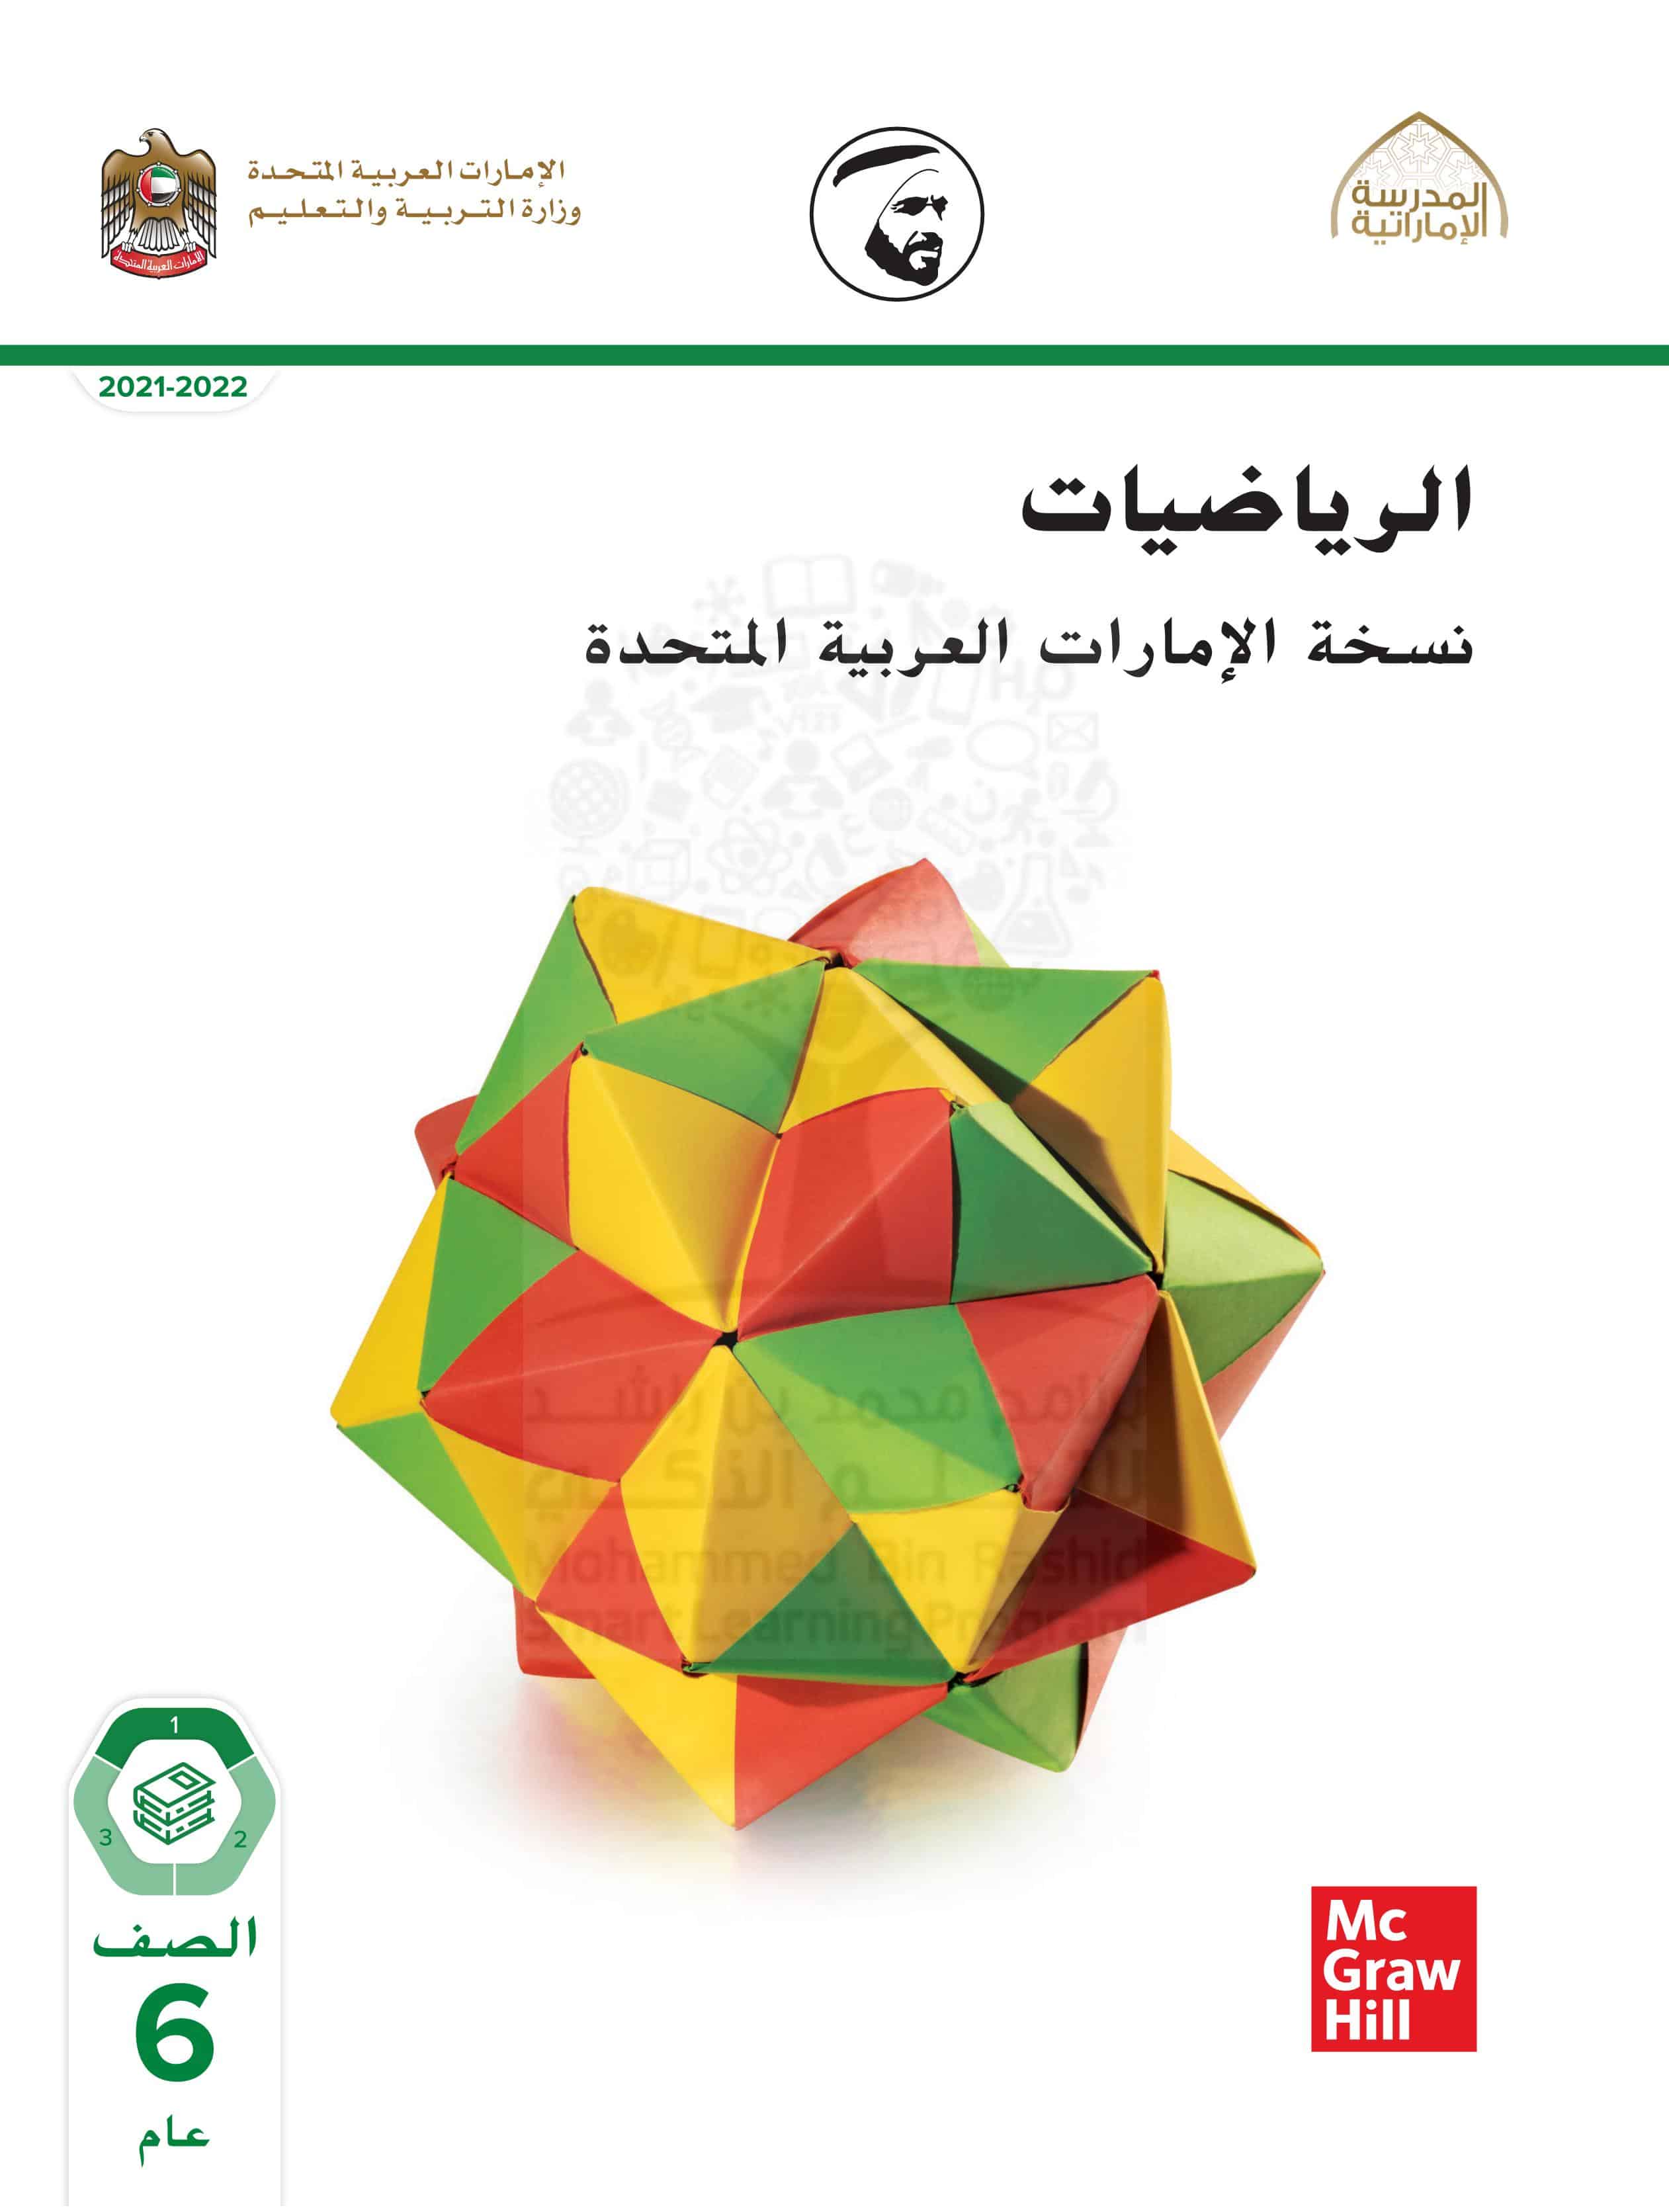 كتاب الطالب وحدة النسب والمعادلات الرياضيات المتكاملة الصف السادس الفصل الدراسي الأول 2021-2022